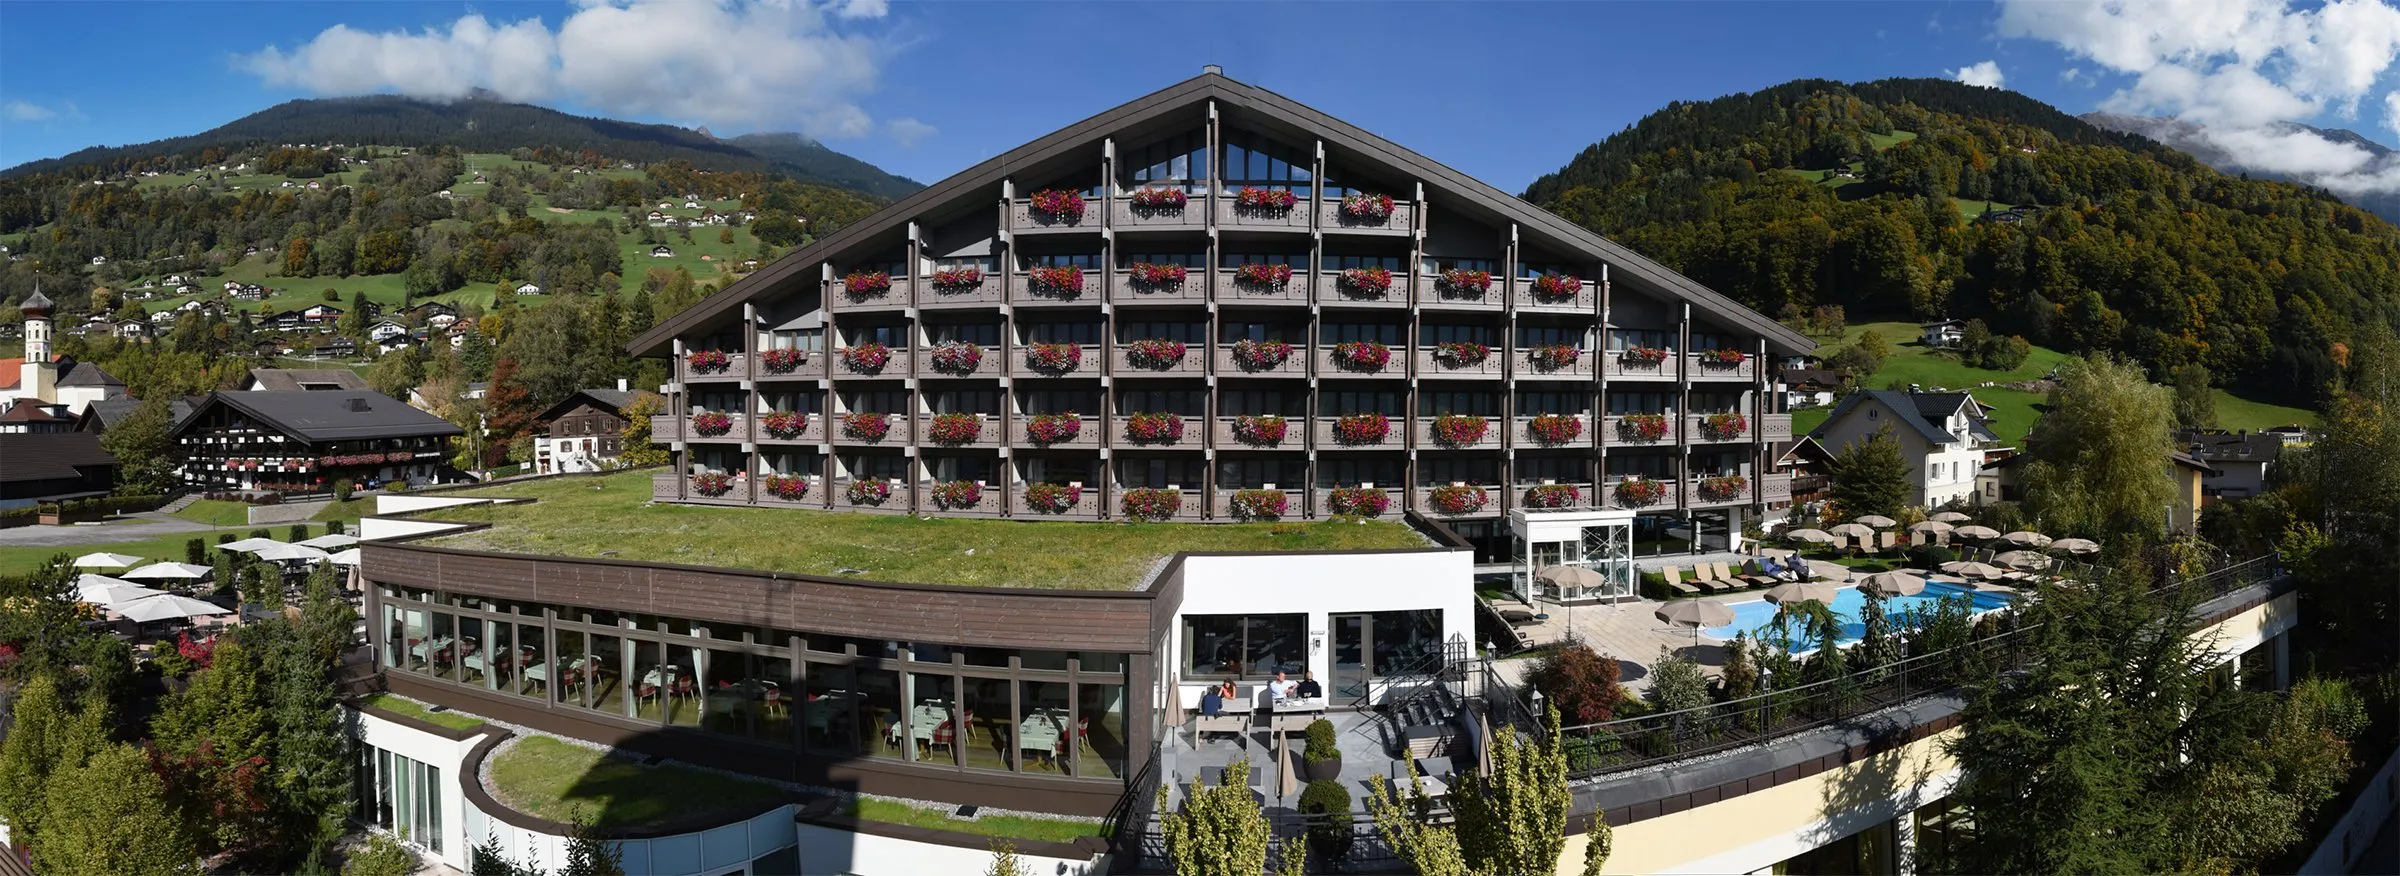 Building hotel Löwen Hotel Montafon